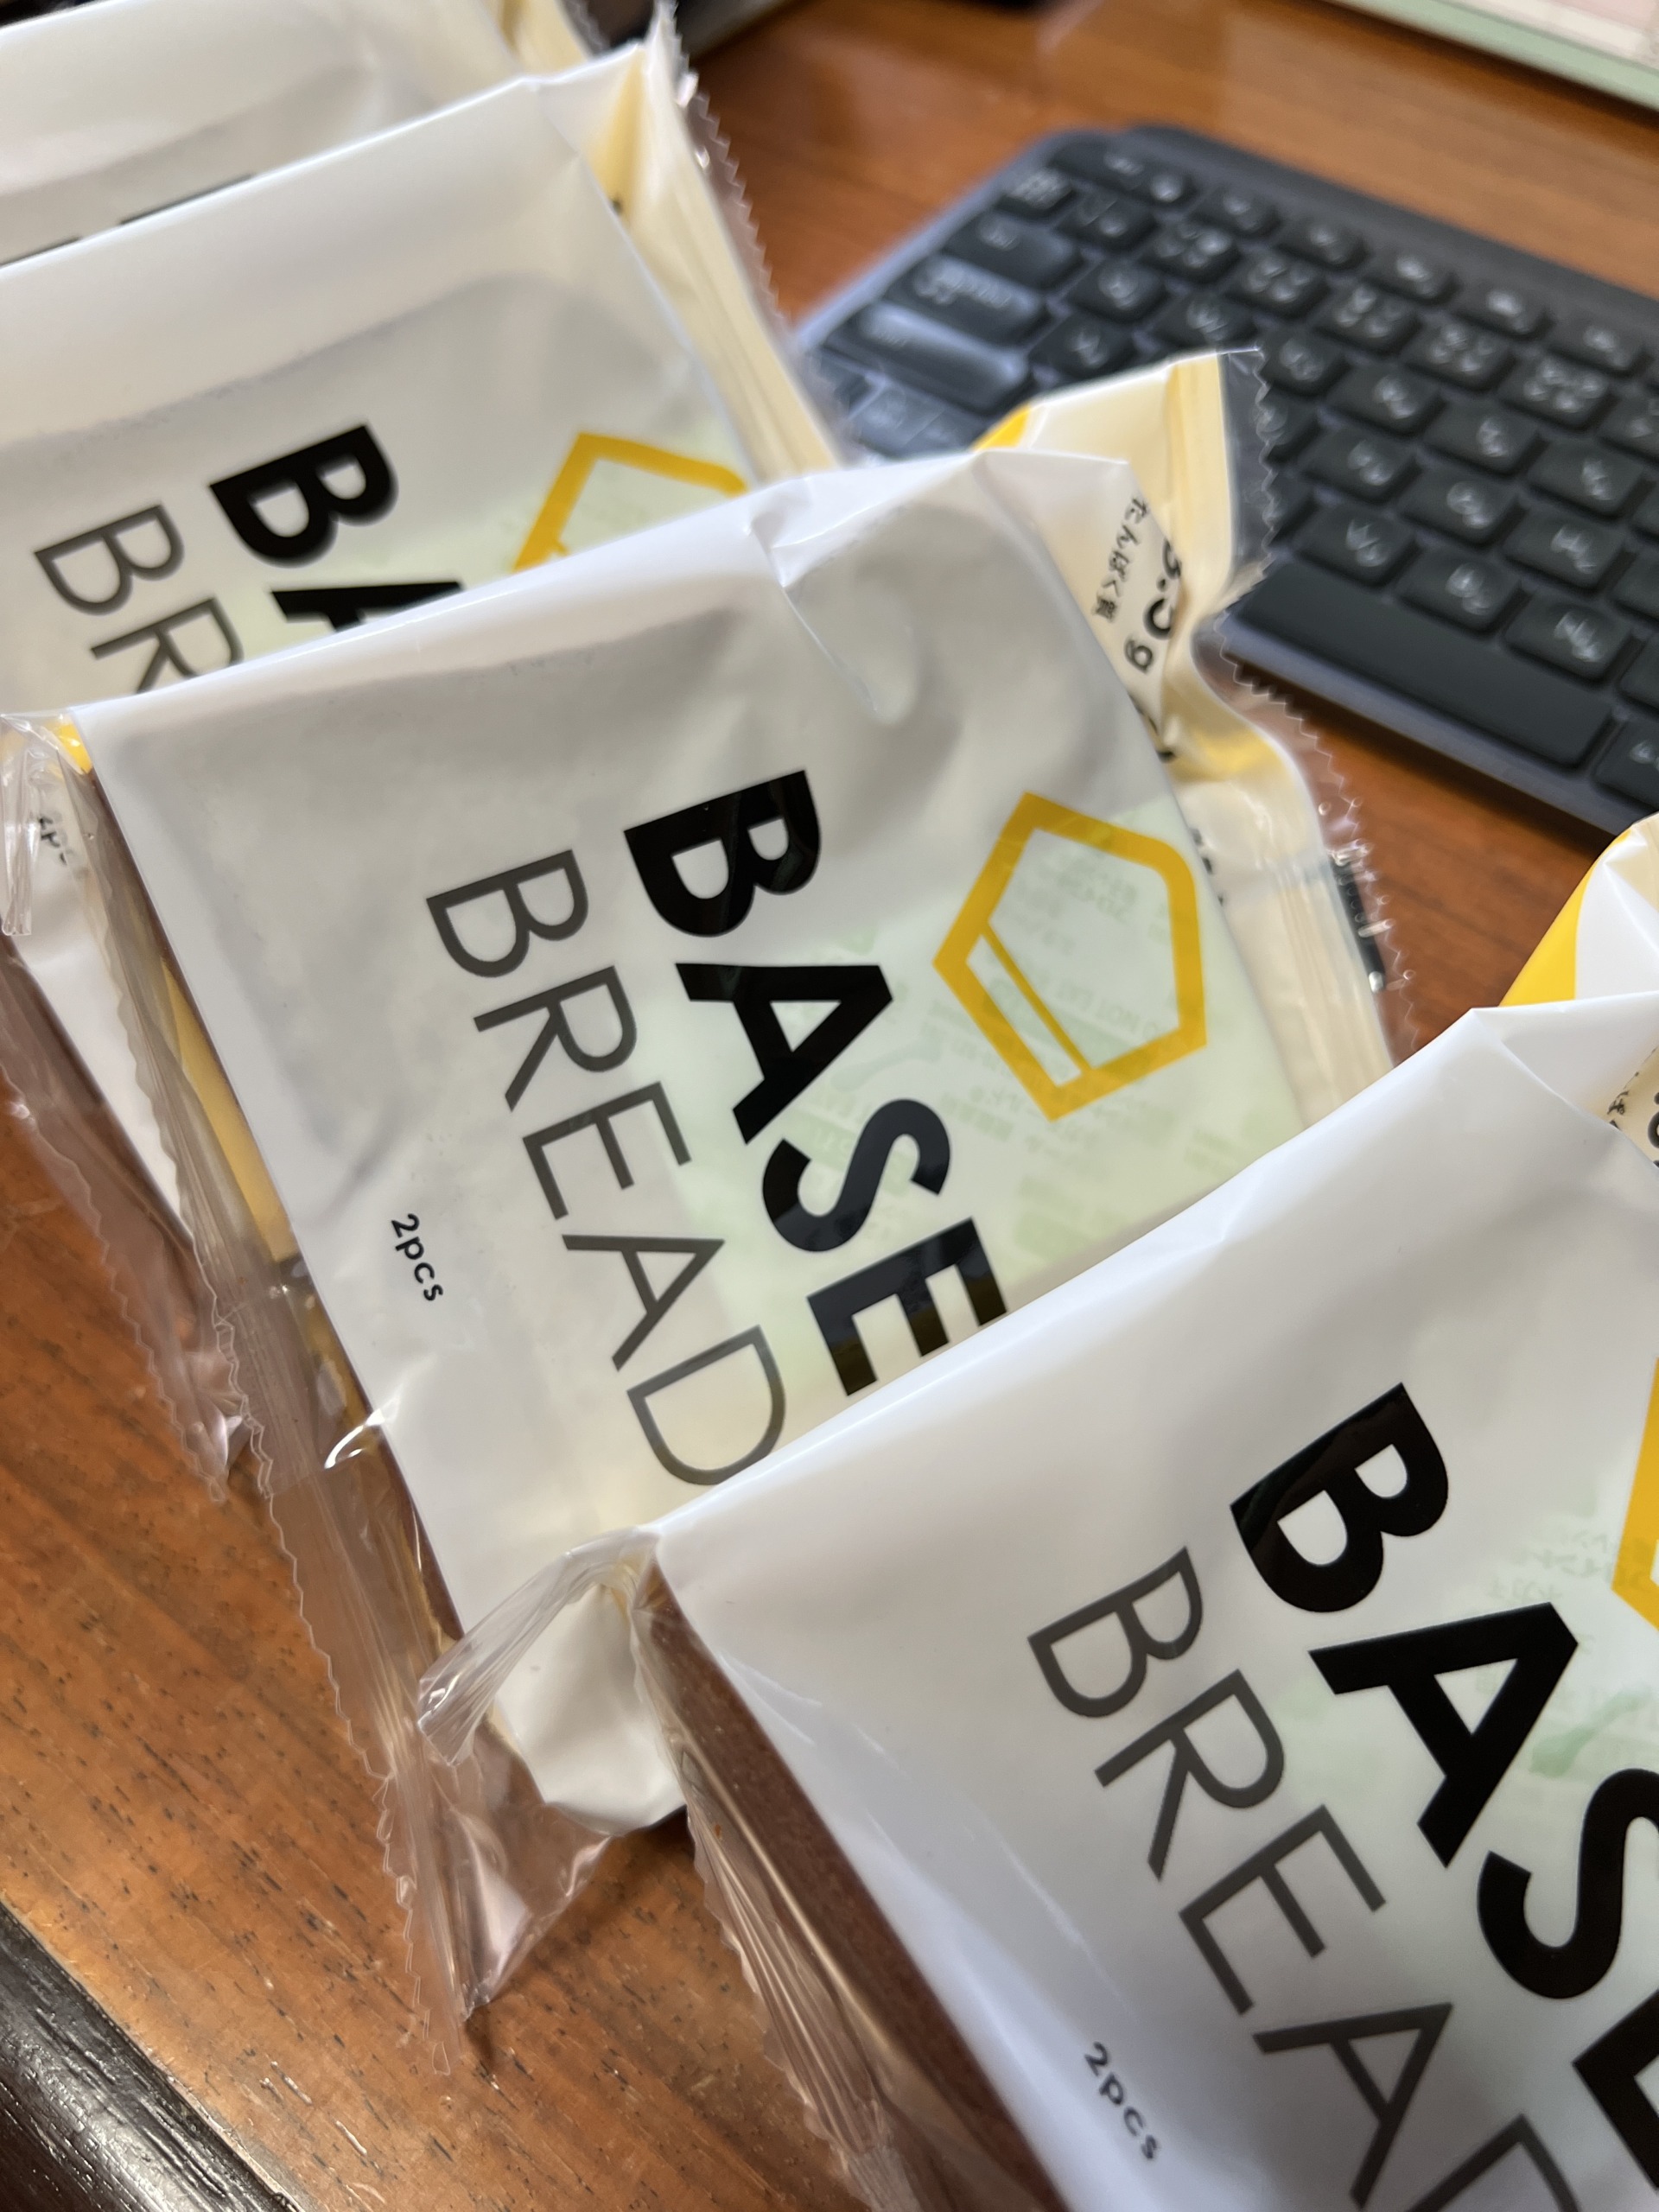 BASE BREADミニ食パンのパッケージ